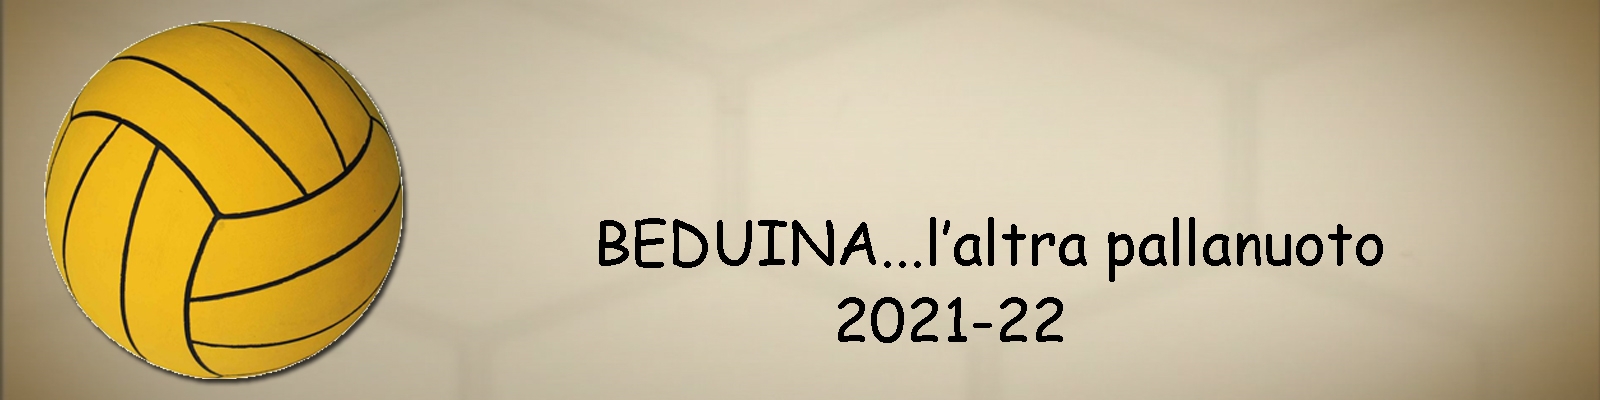 Beduina...l'altra pallanuoto 2022